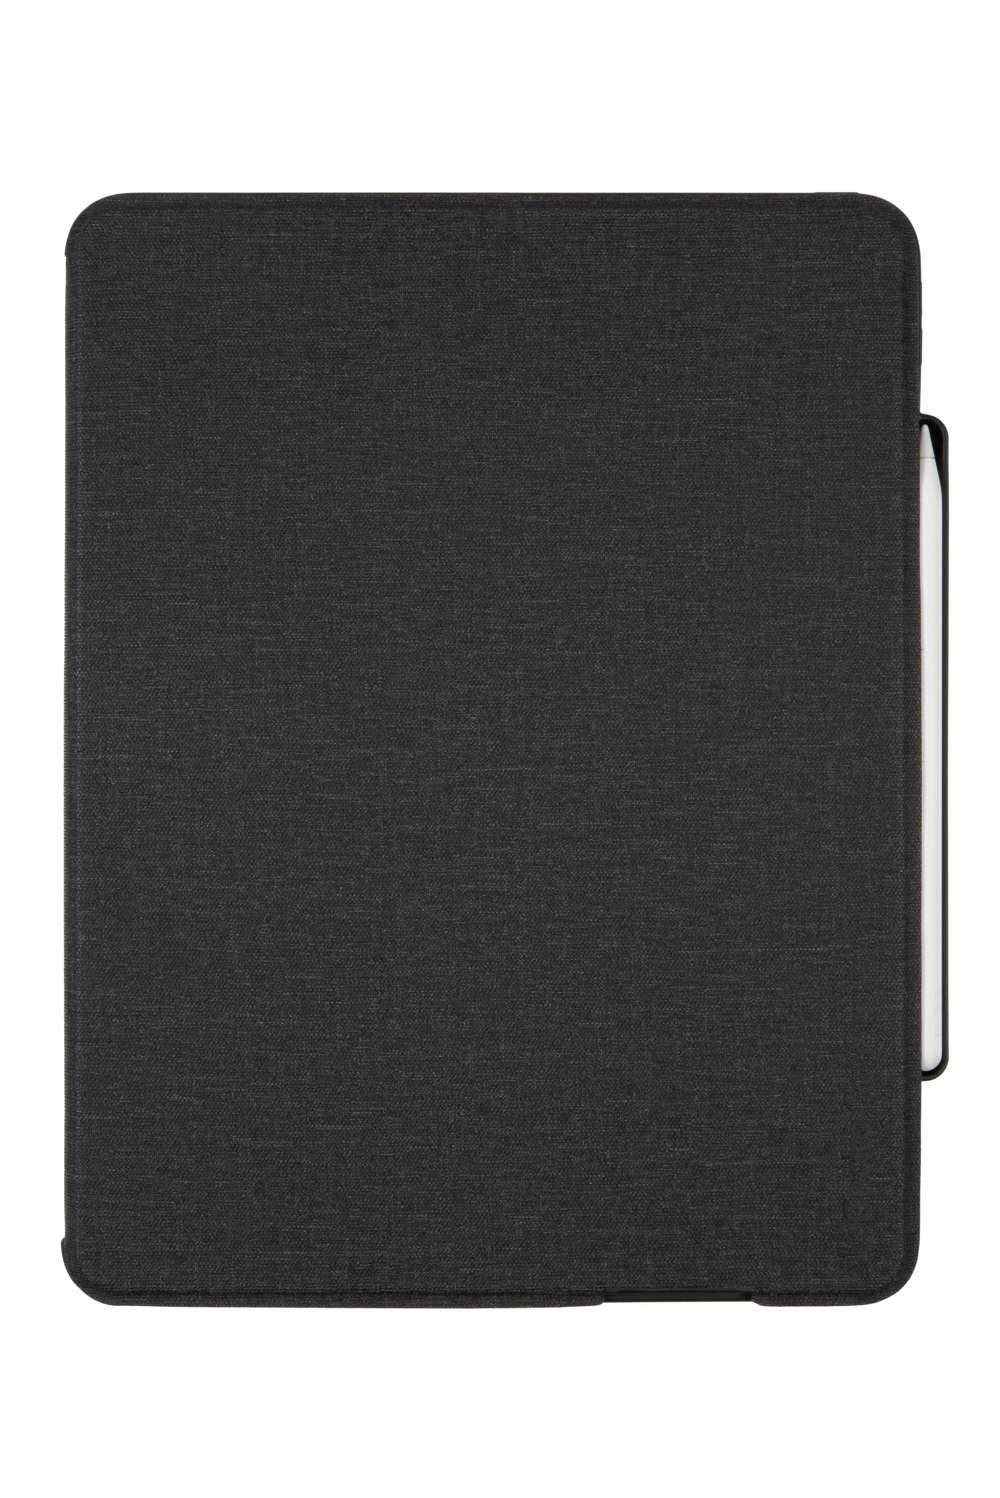 Gecko Covers Hoes met Toetsenbord - Geschikt voor iPad Pro 2021 - 12.9 inch